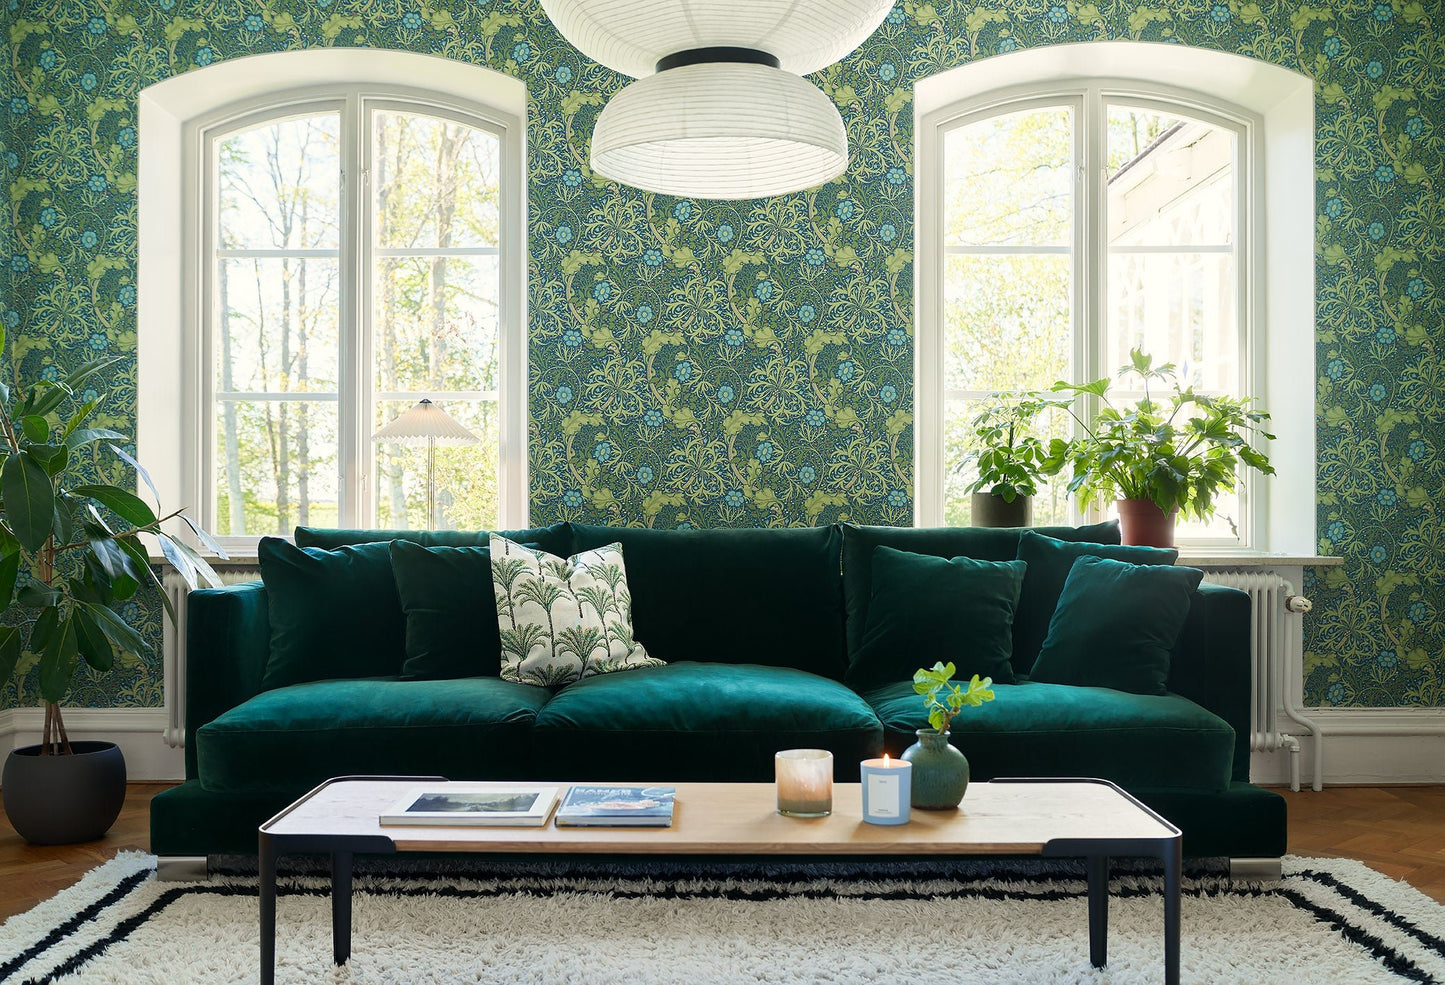 Colorado 4-seter sofa Lario Dark Green, en del av kategorien 4-seter - At Home Interiør